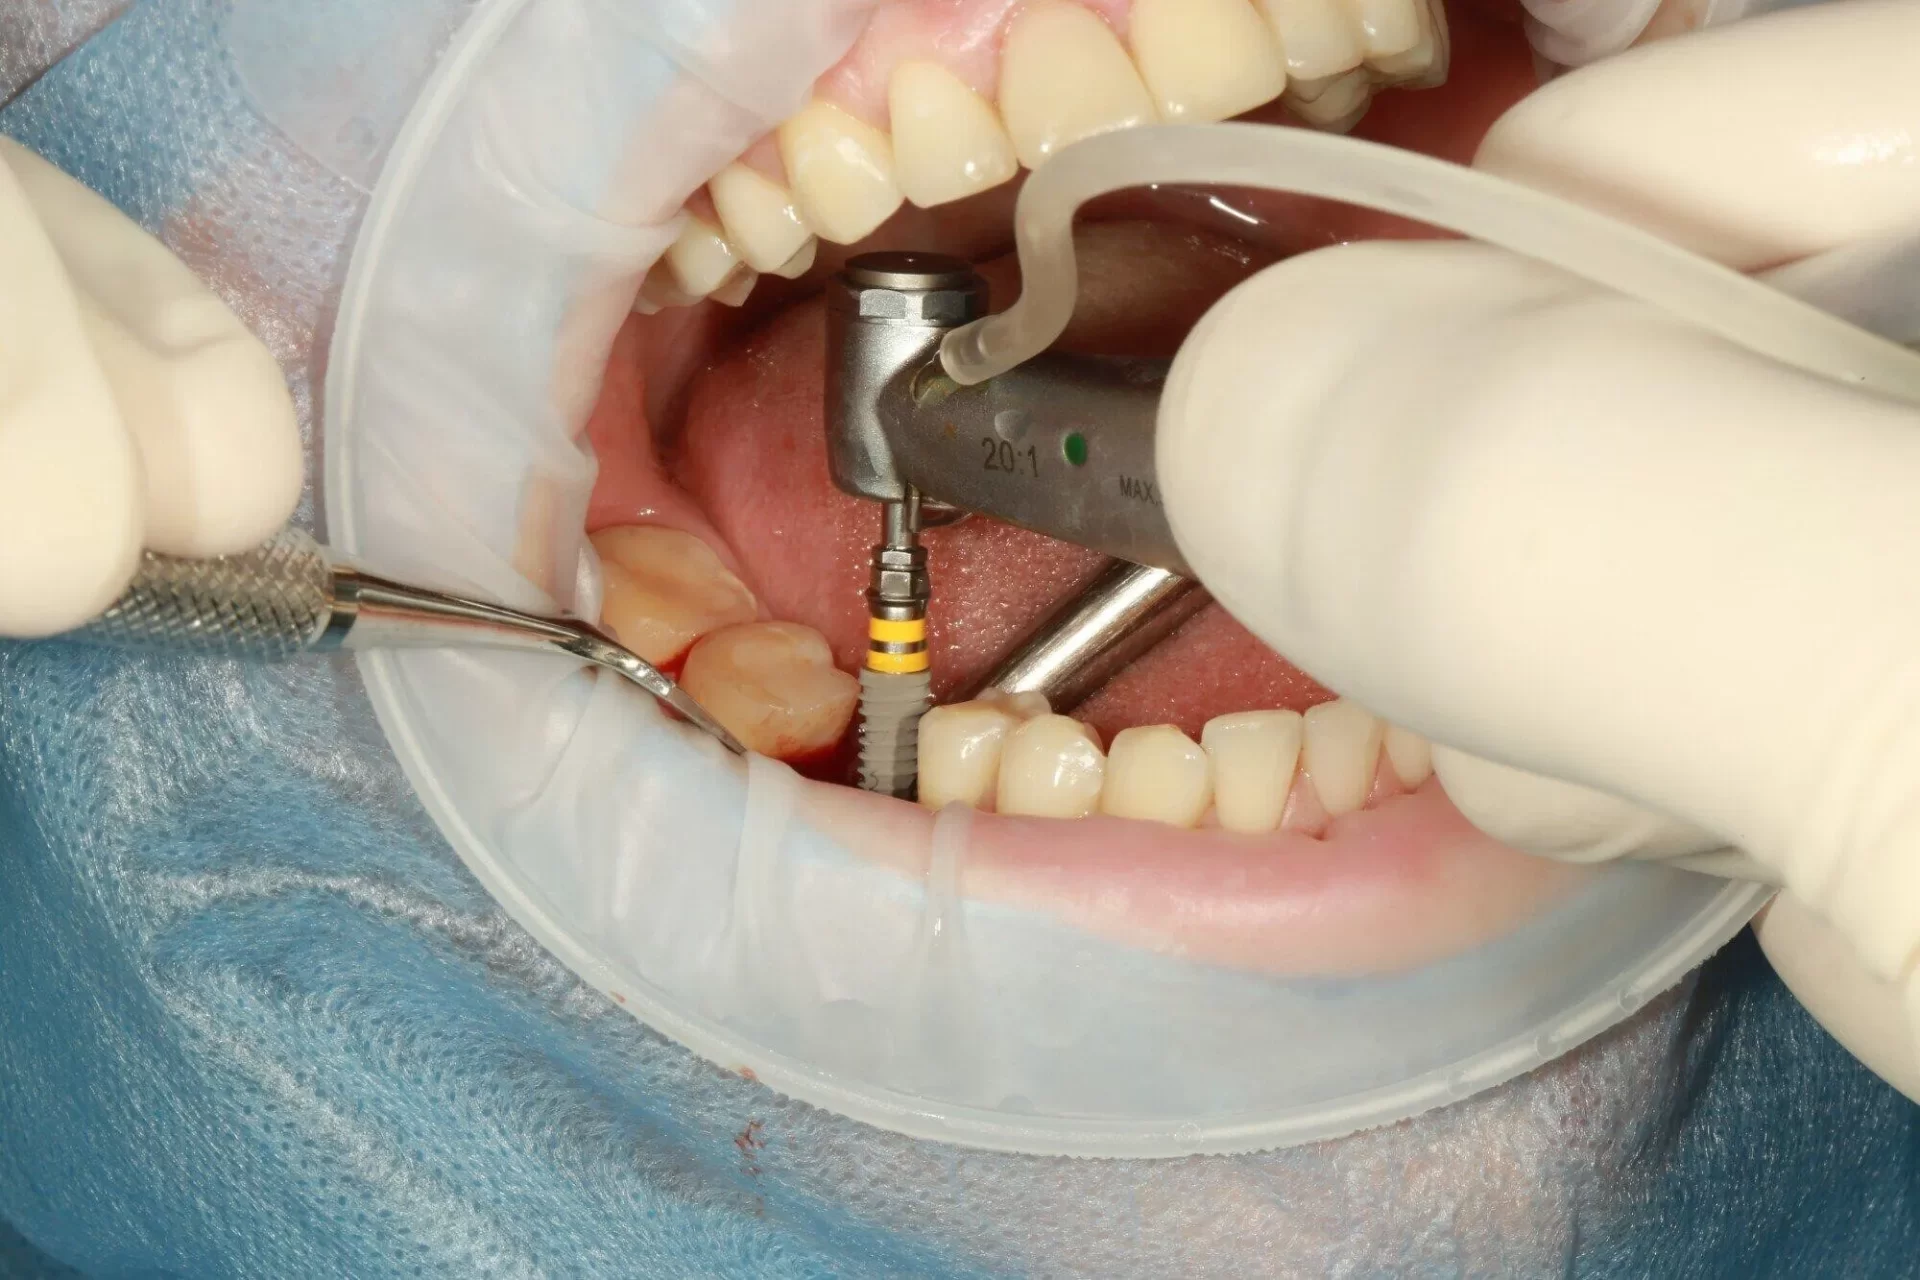 dental implants vs veneers